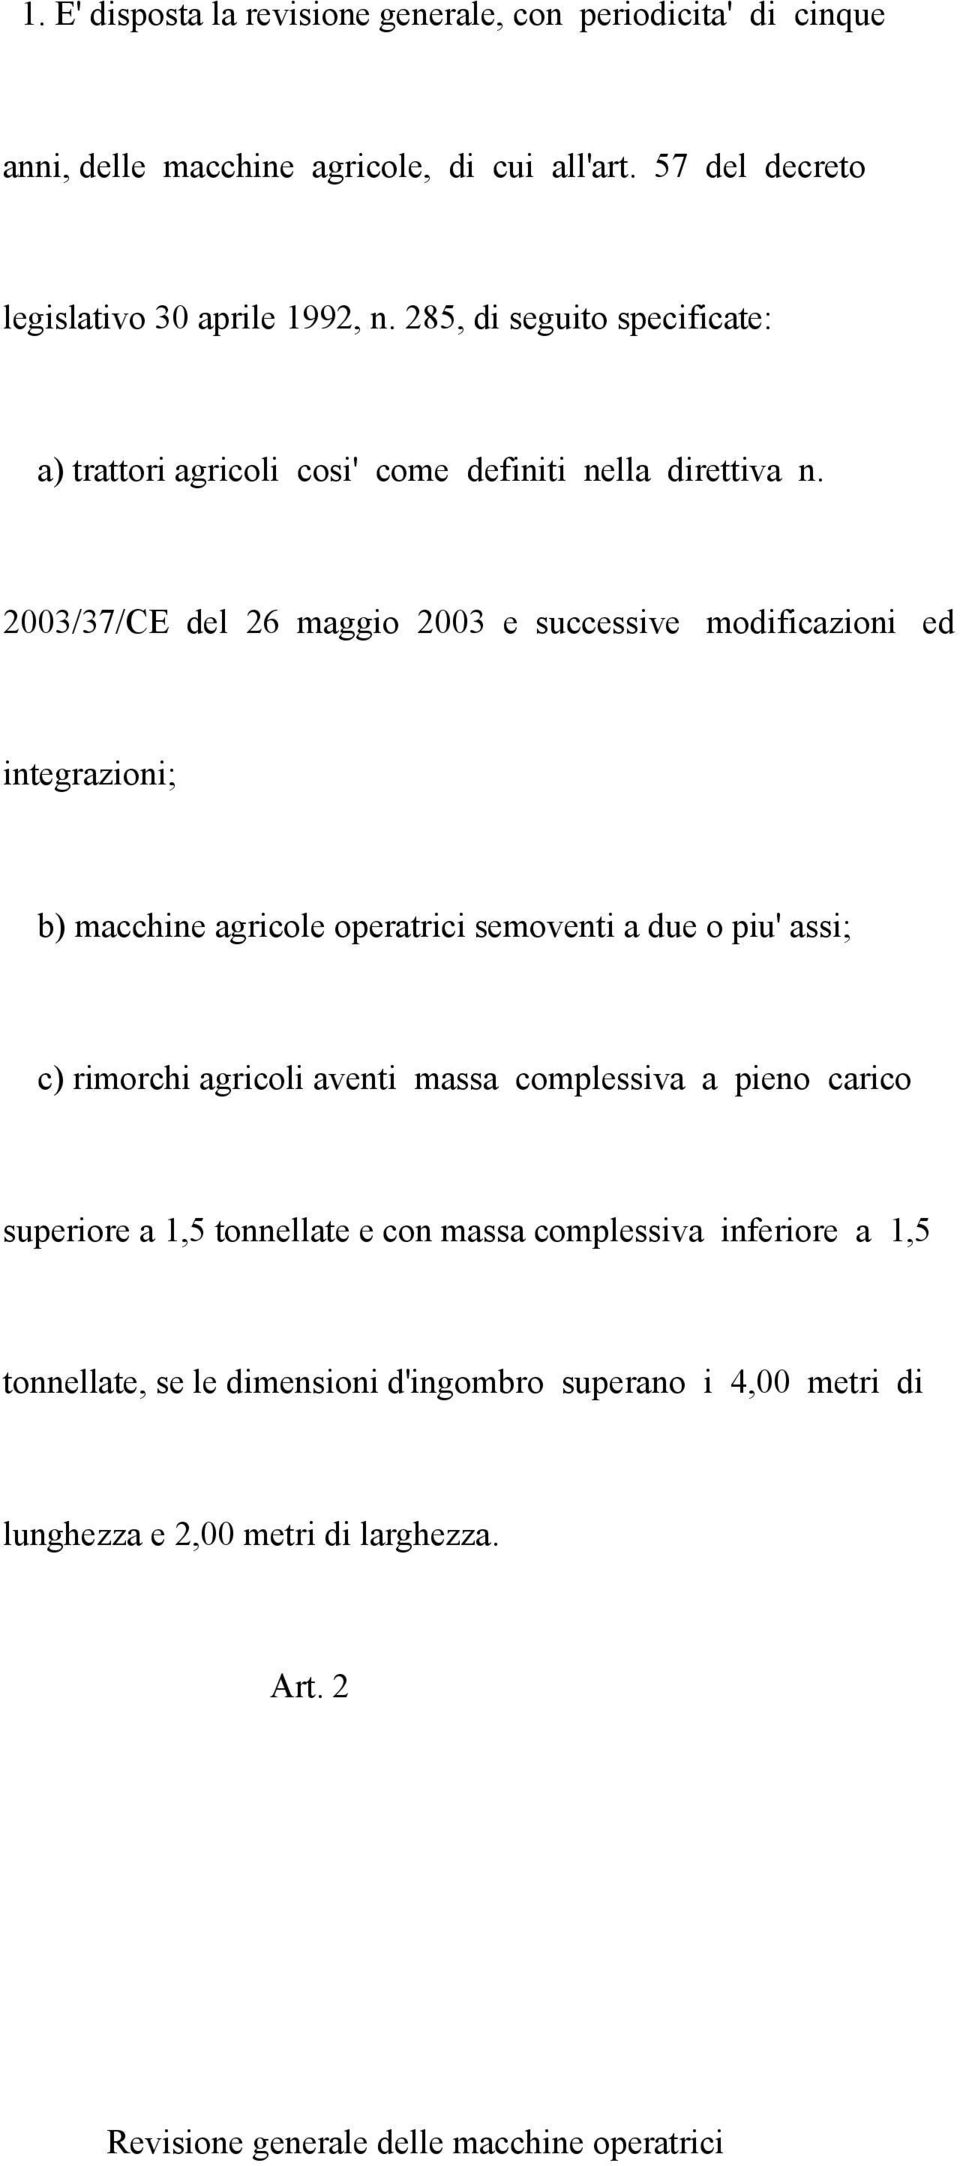 2003/37/CE del 26 maggio 2003 e successive modificazioni ed integrazioni; b) macchine agricole operatrici semoventi a due o piu' assi; c) rimorchi agricoli aventi